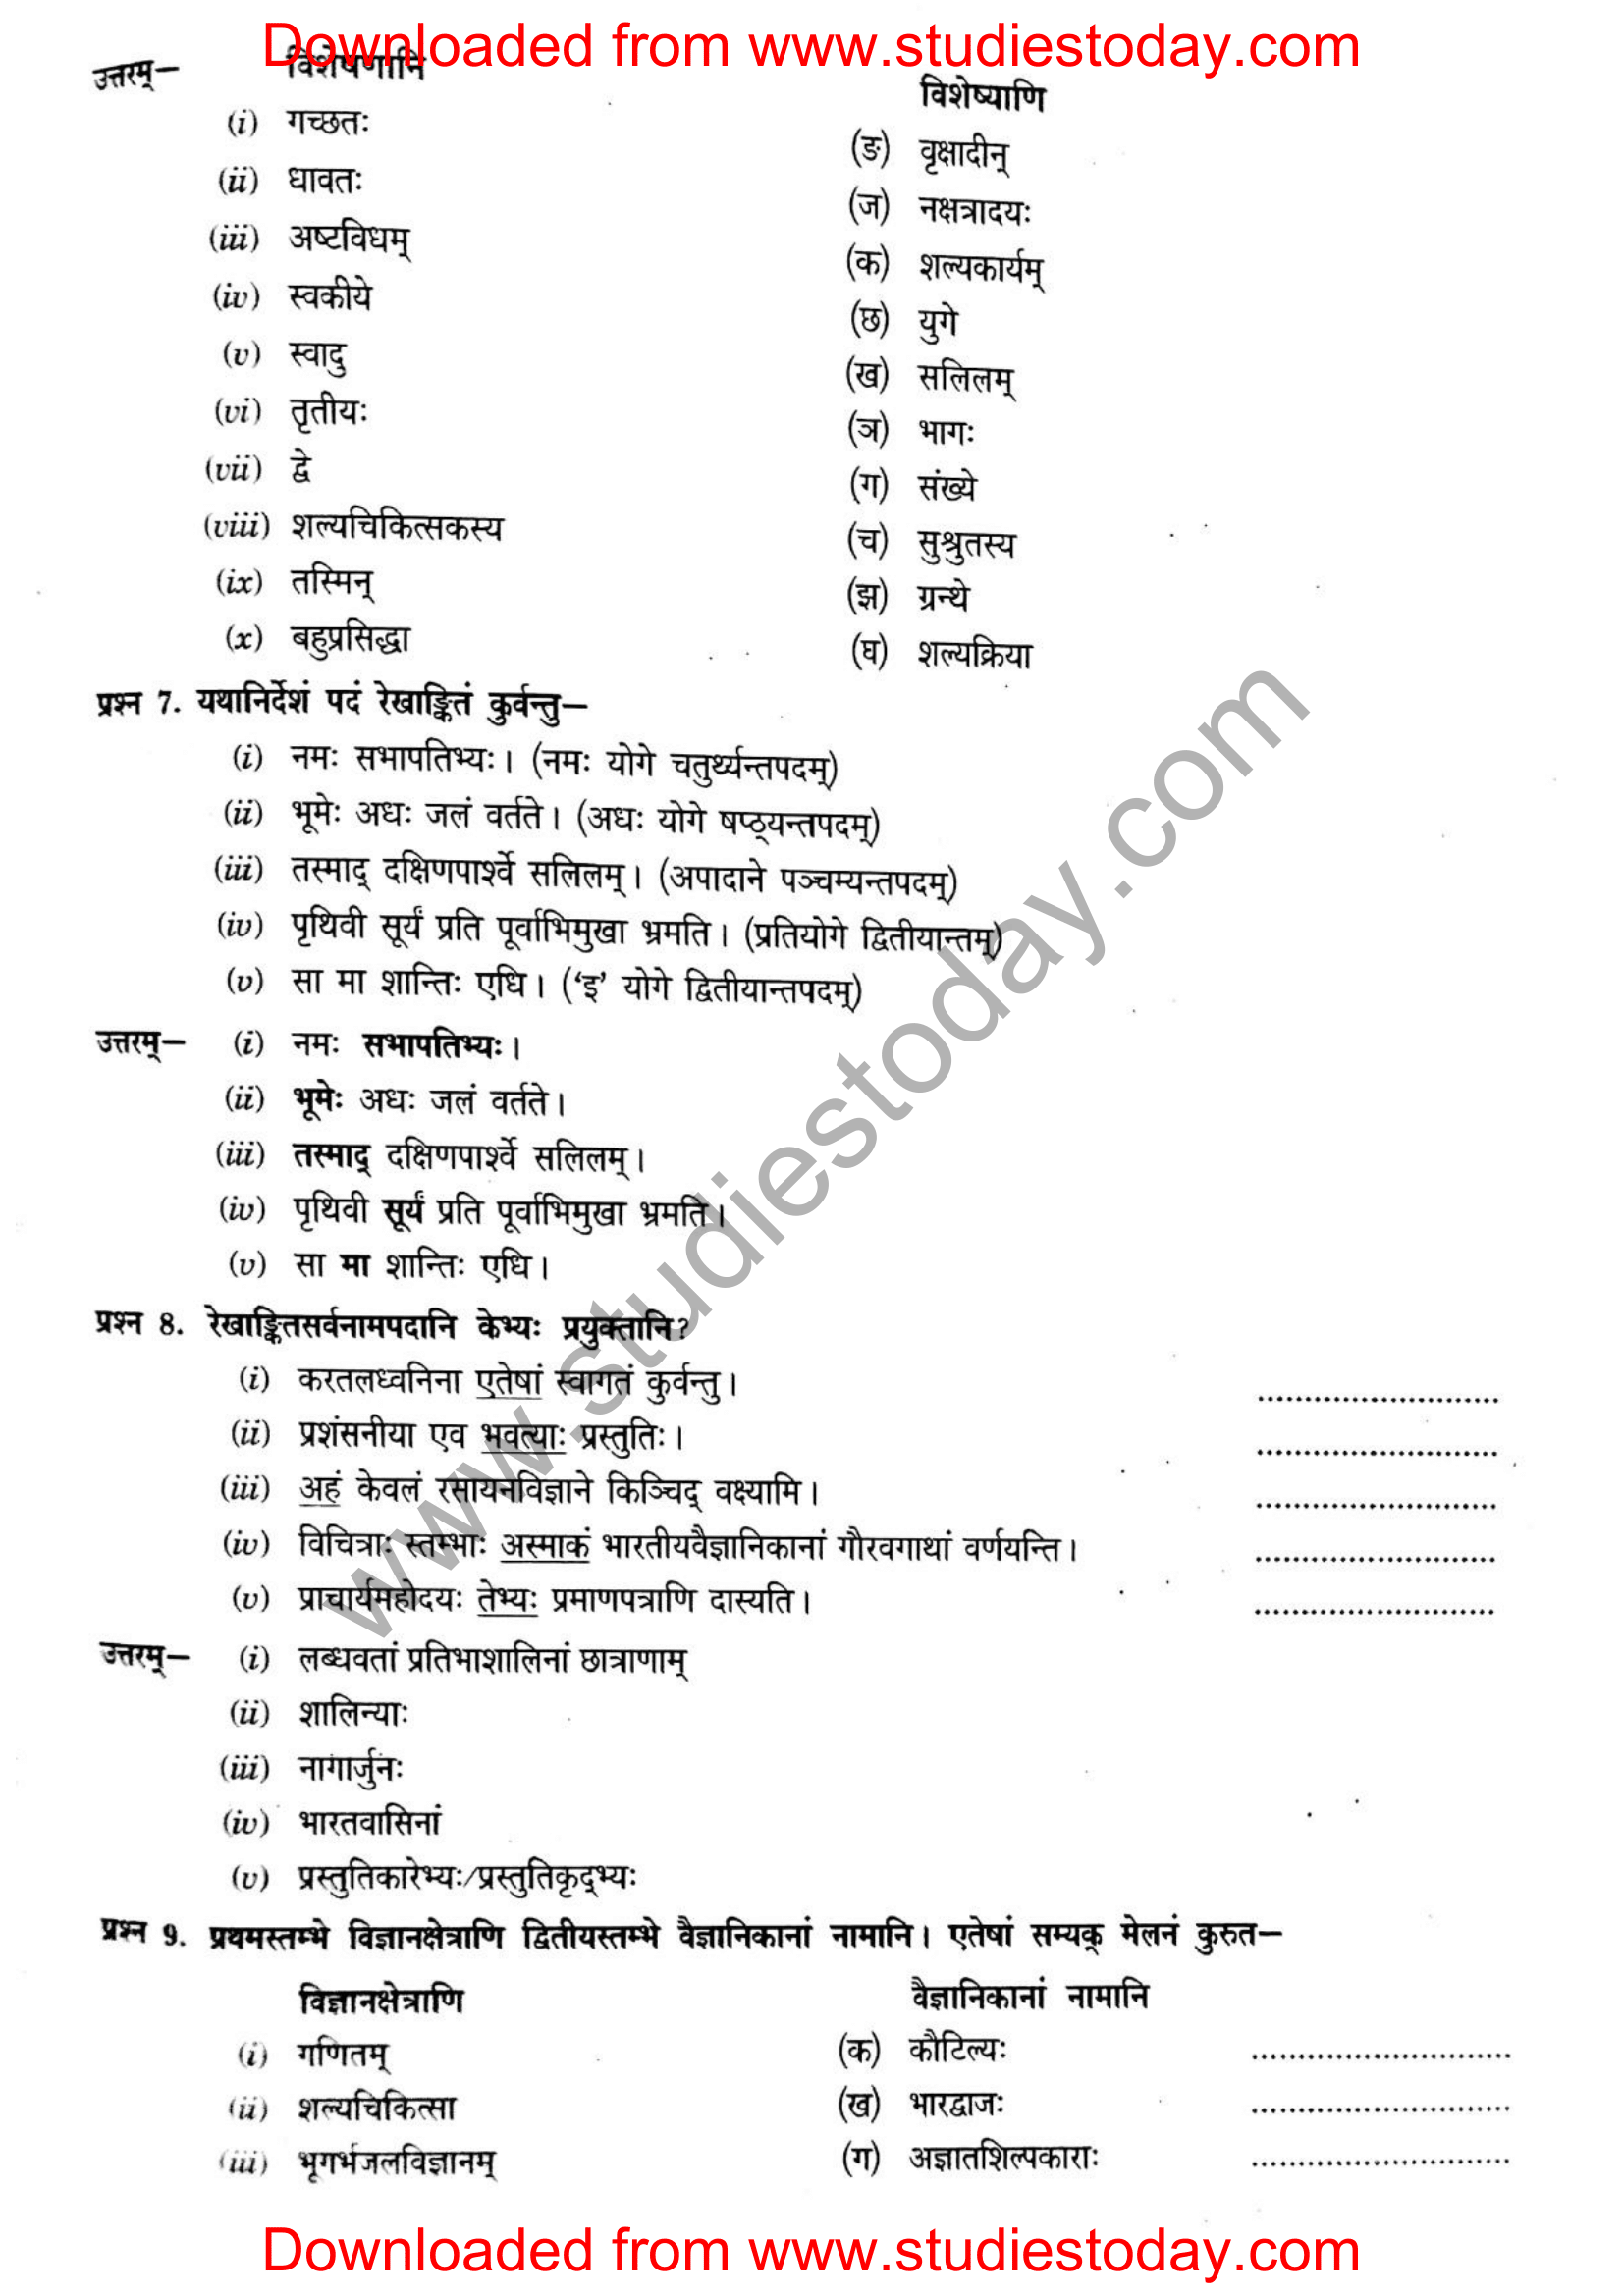 ncert-solutions-class-12-sanskrit-ritikia-chapter-8-11